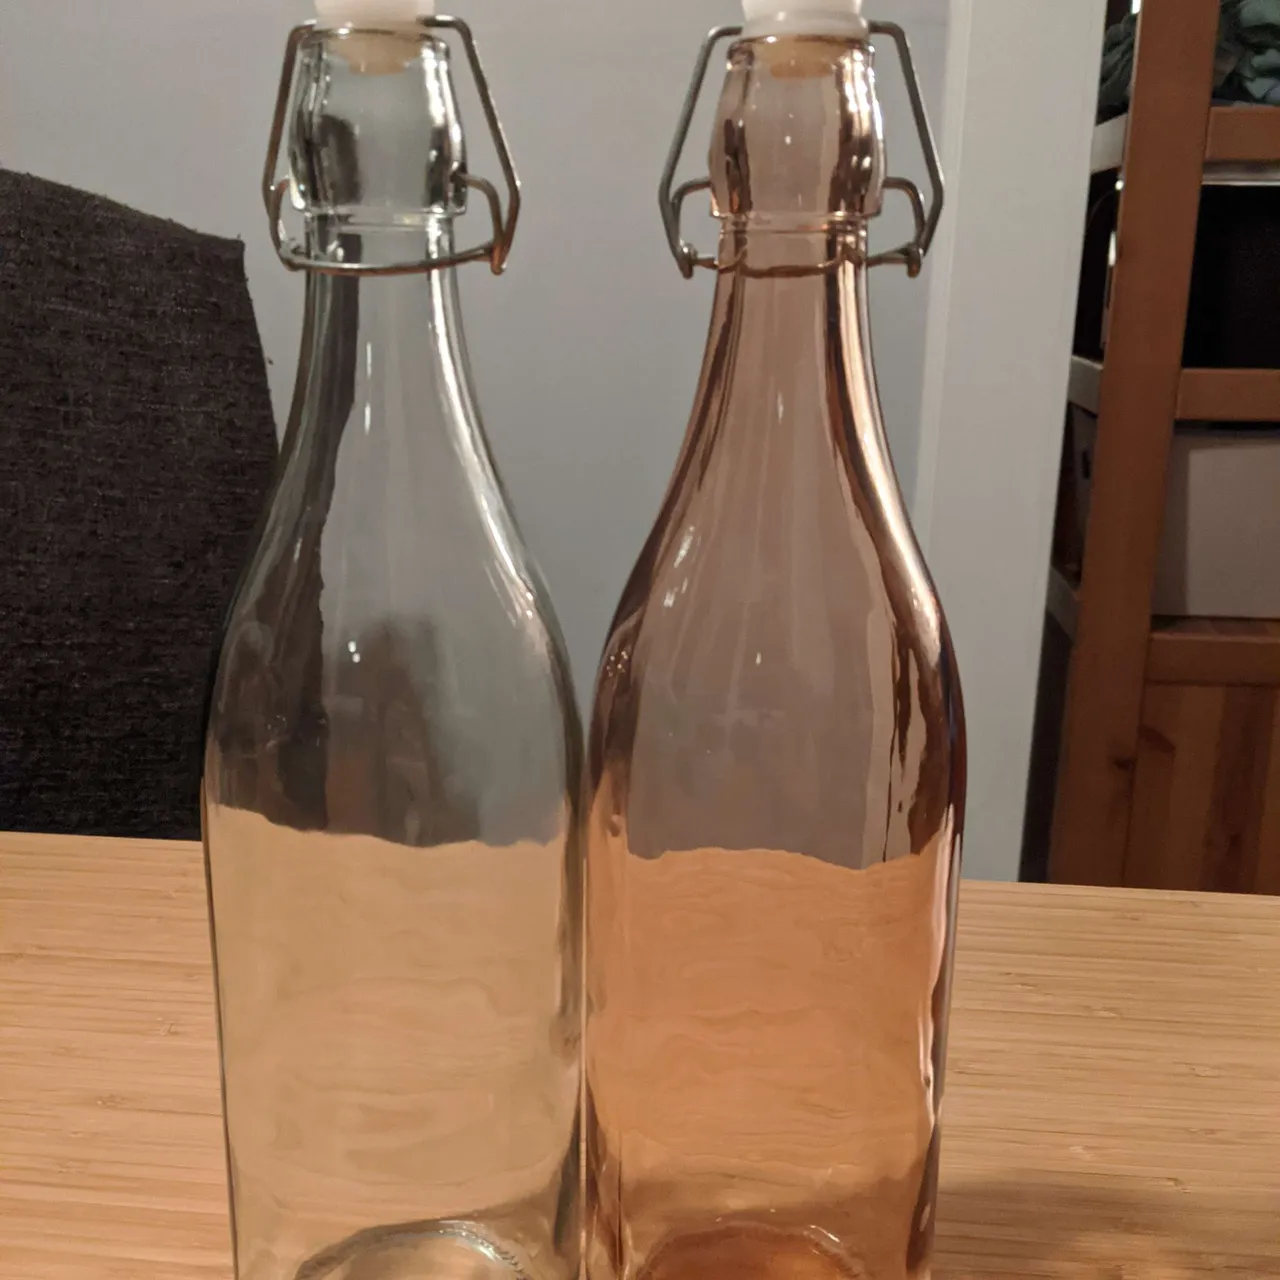 🆓 Two 1L fliptop bottles photo 1